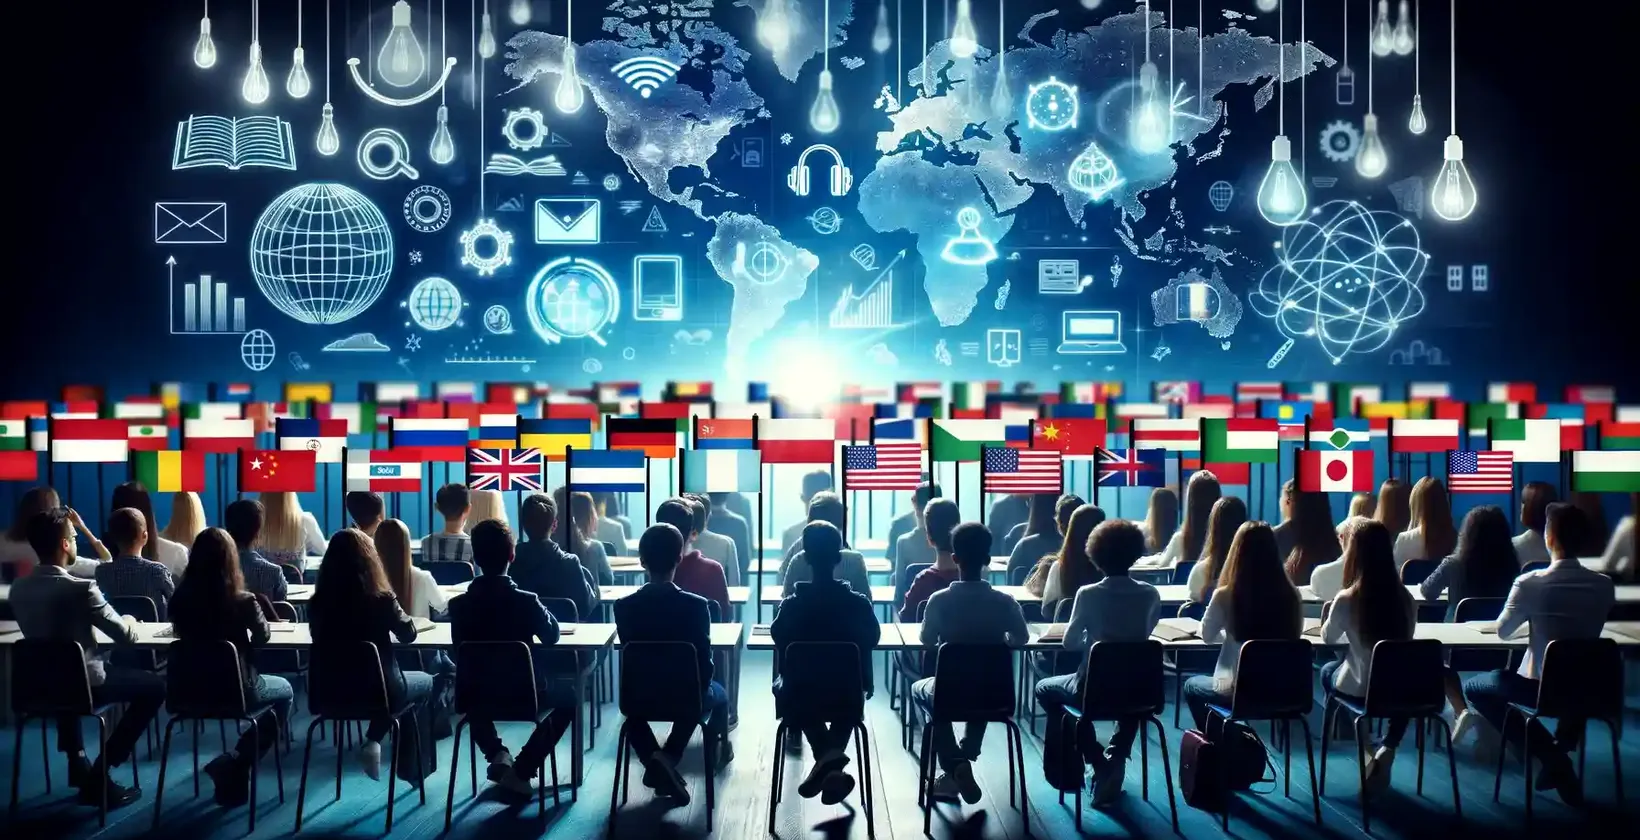 Conférences multilingues illustrées par des étudiants dans un auditorium regardant une projection de carte du monde entourée de symboles.